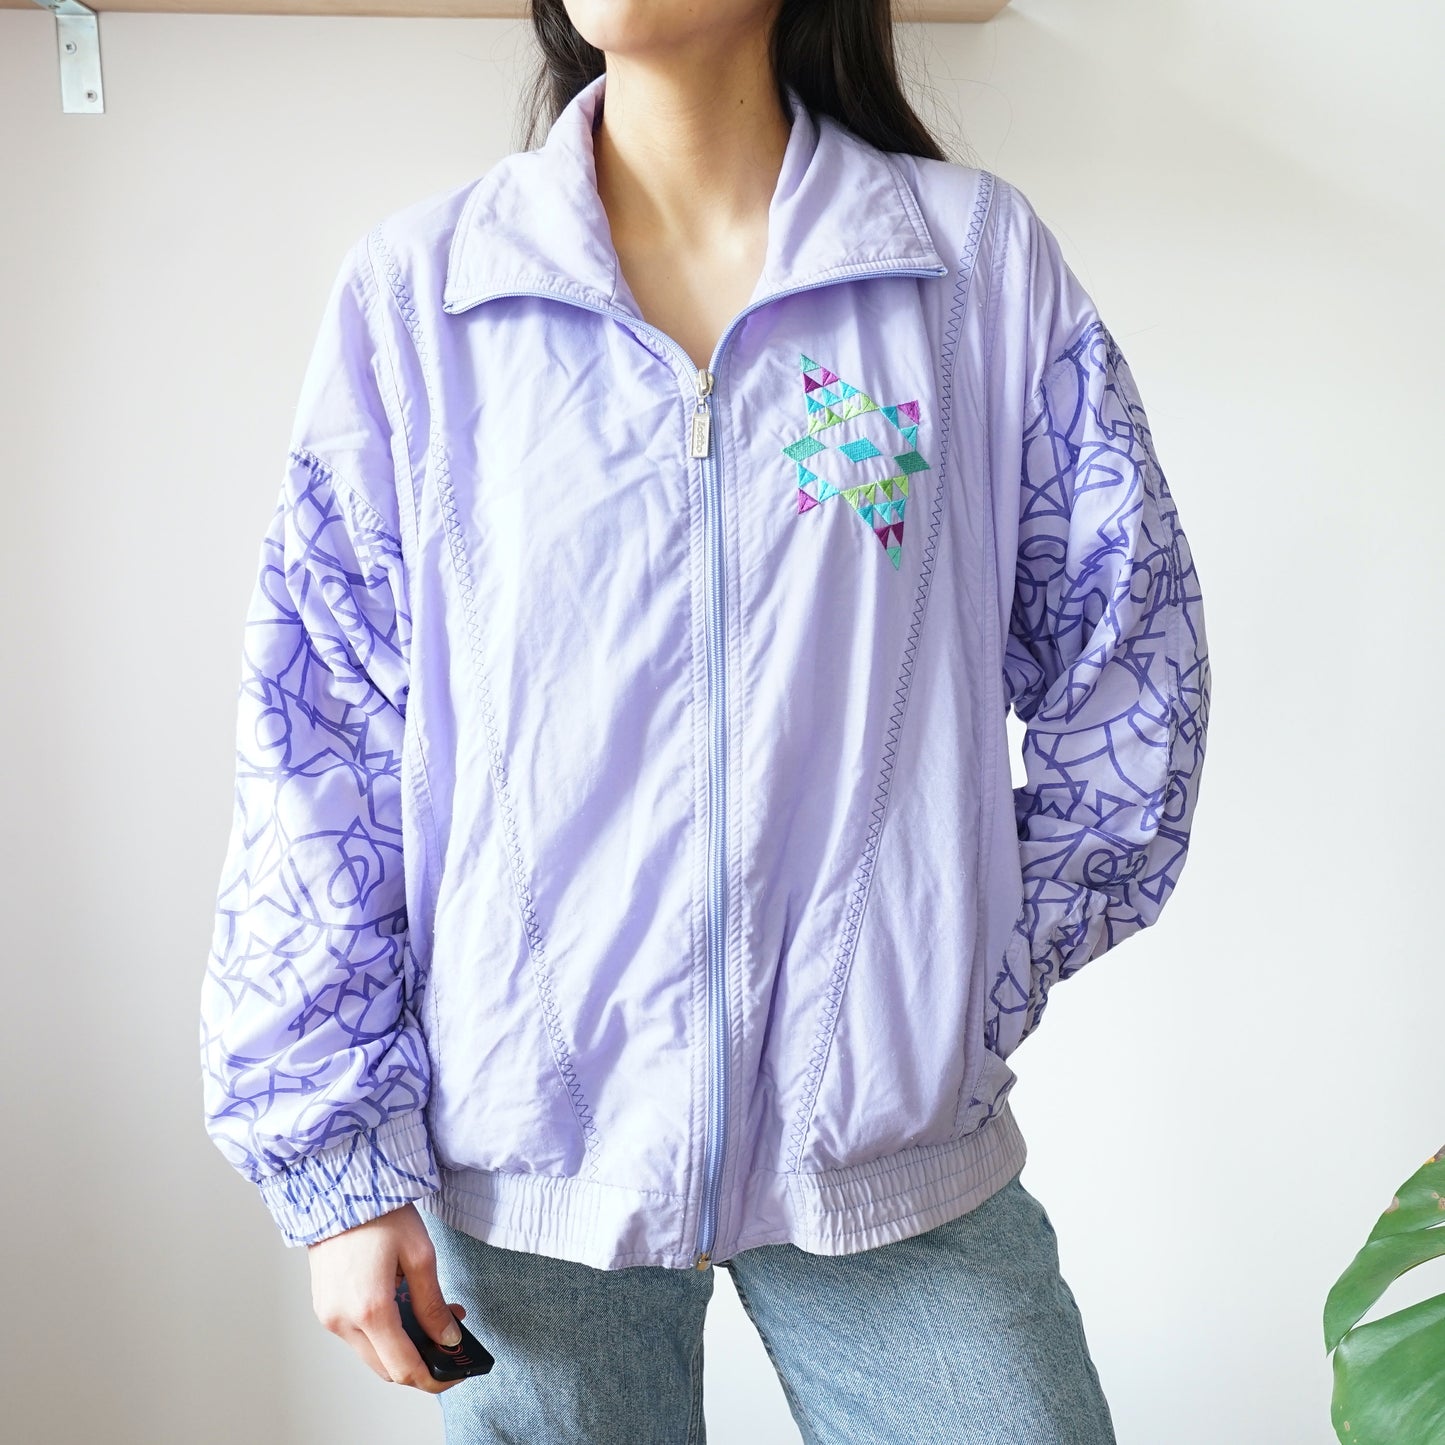 Vintage Lotto Windbreaker Size S-M light purple sport jacket vintage sport jacket 80s shell jacket women men jacket